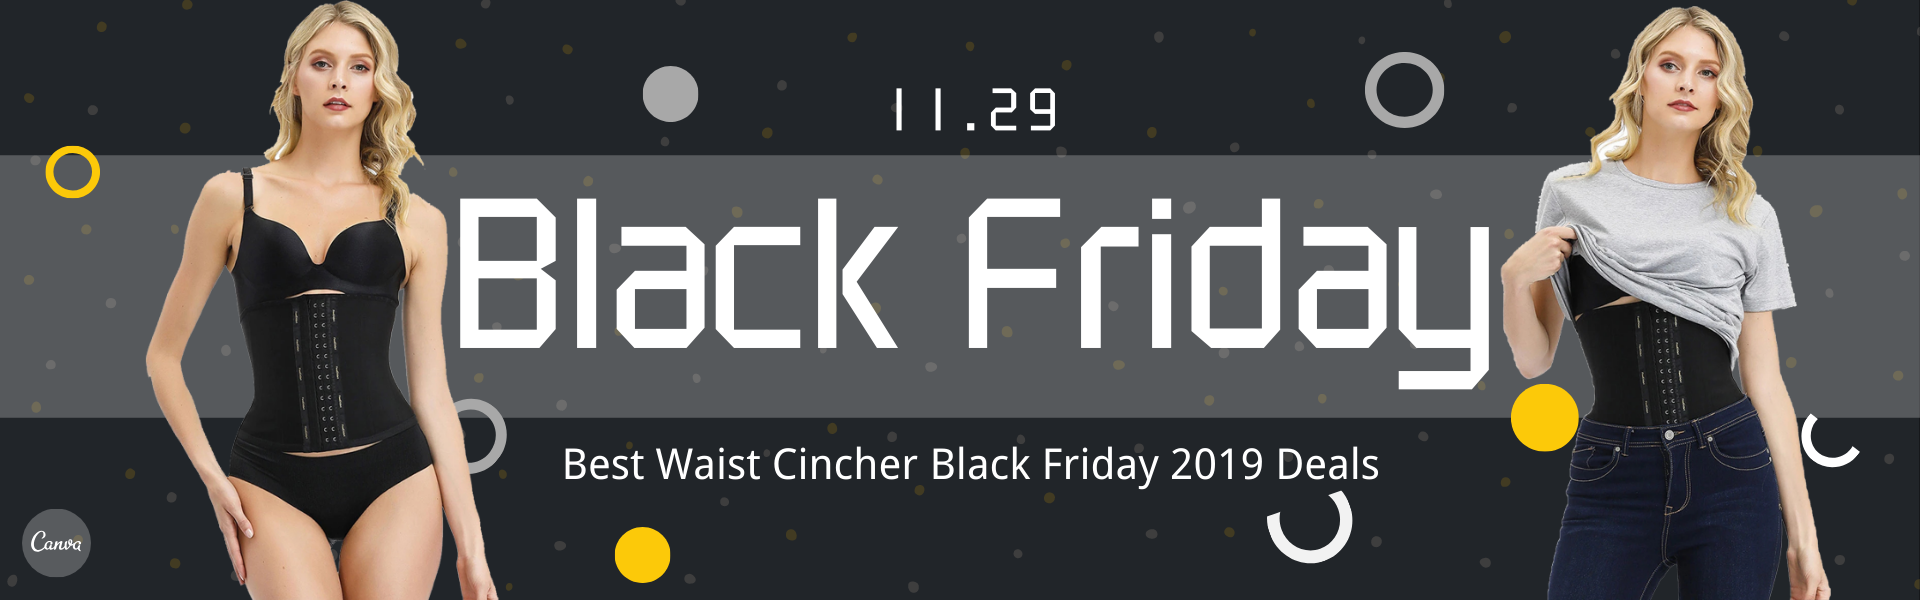 Best Waist Cincher Black Friday 2019 Deals